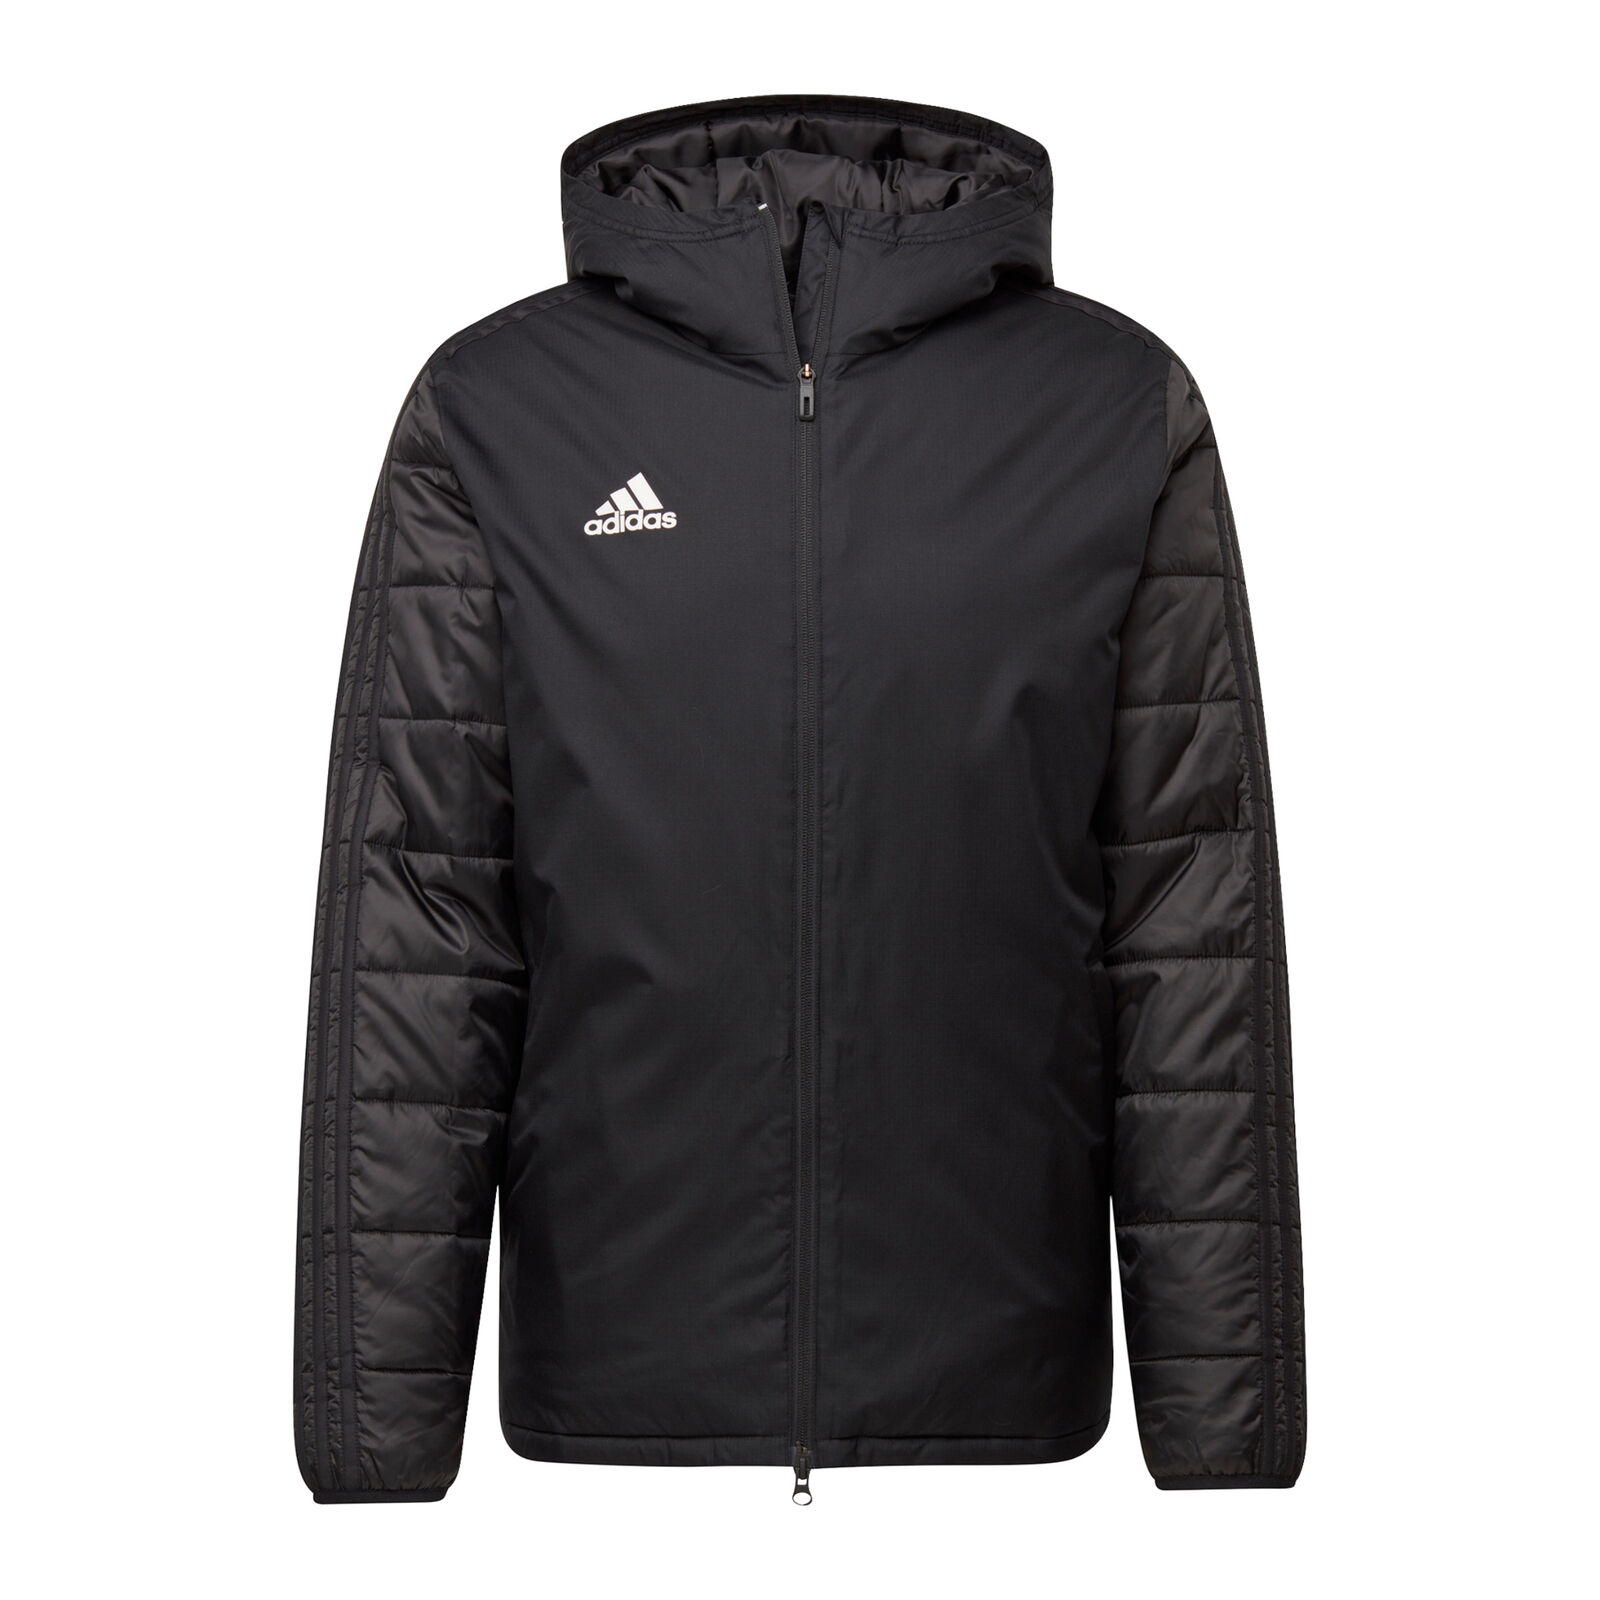 Bild zu Adidas Condivo 18 Herren Winterjacke für 49,95€ (Vergleich: 59,95€)